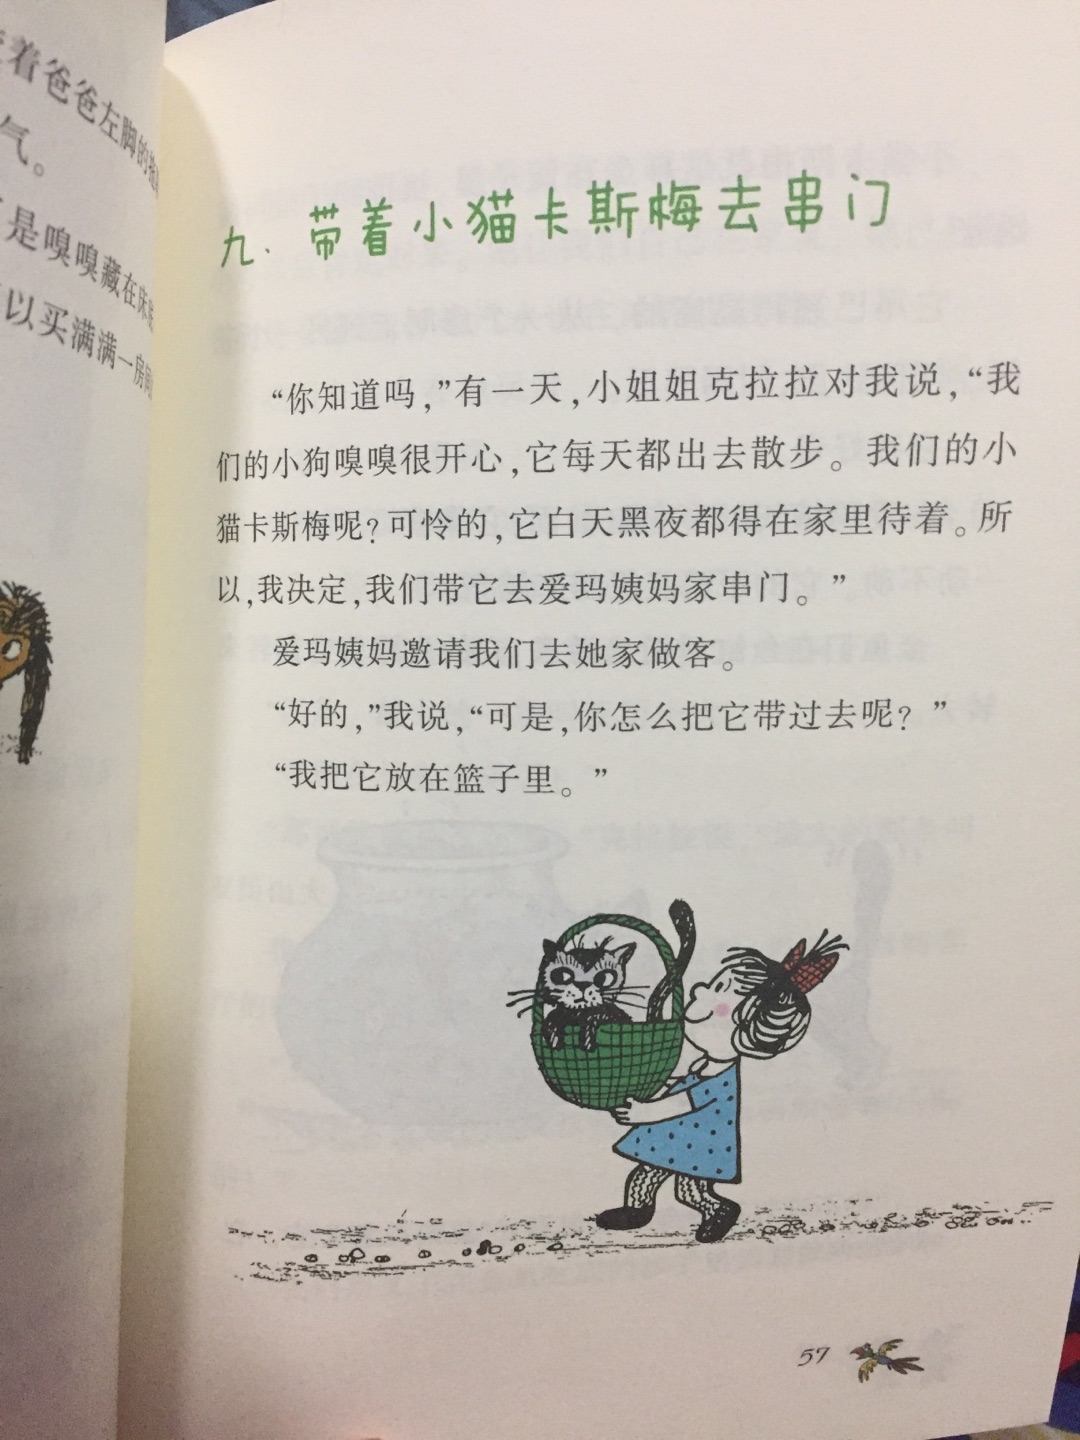 很有意思的一套书，这是其中的第二本讲姐弟两个人和动物之间发生的各种有趣的故事，每一个故事读来都让人忍不住哈哈大笑，温馨而又幽默风趣。买这套书的初衷是想找一本有趣的书，让孩子的中文也能顺利的从亲子阅读过渡到自主阅读，每一个故事不会太长，内文的排版也比较合理，而且每个故事都配有至少一副插图。对于刚开始自主阅读的孩子来说比较容易接受。